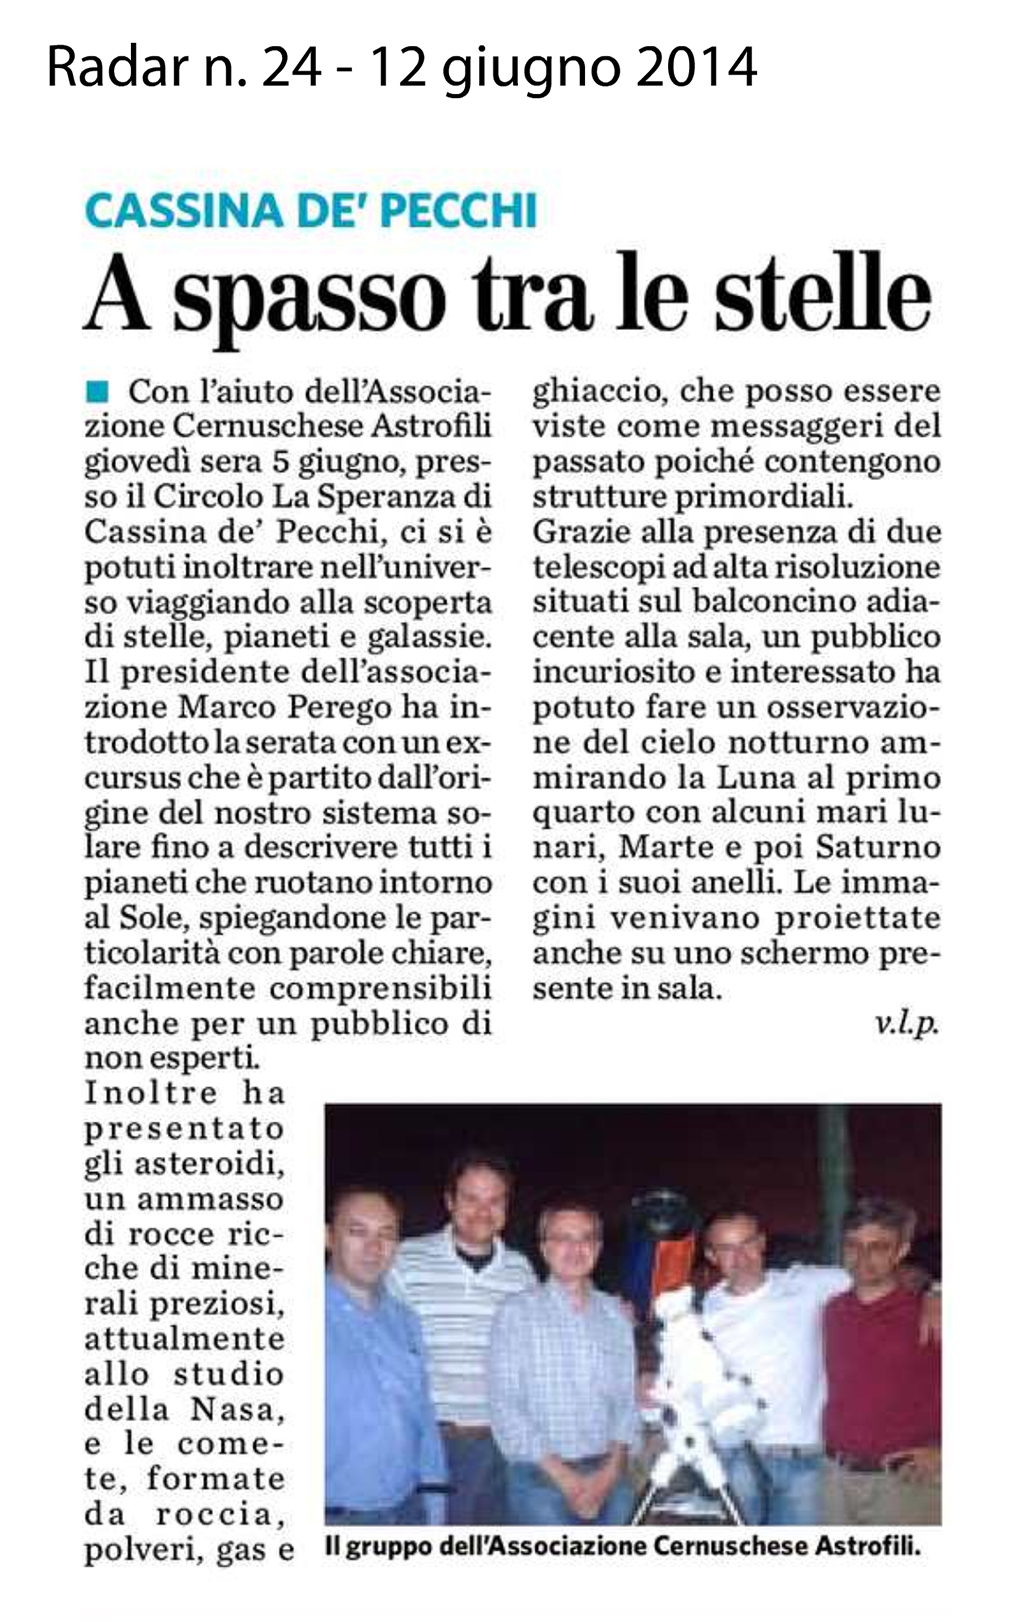 Resoconto della serata svolta a Cassina de' Pecchi il 5 giugno 2014  (da Radar n. 24 del 12.6.2014)